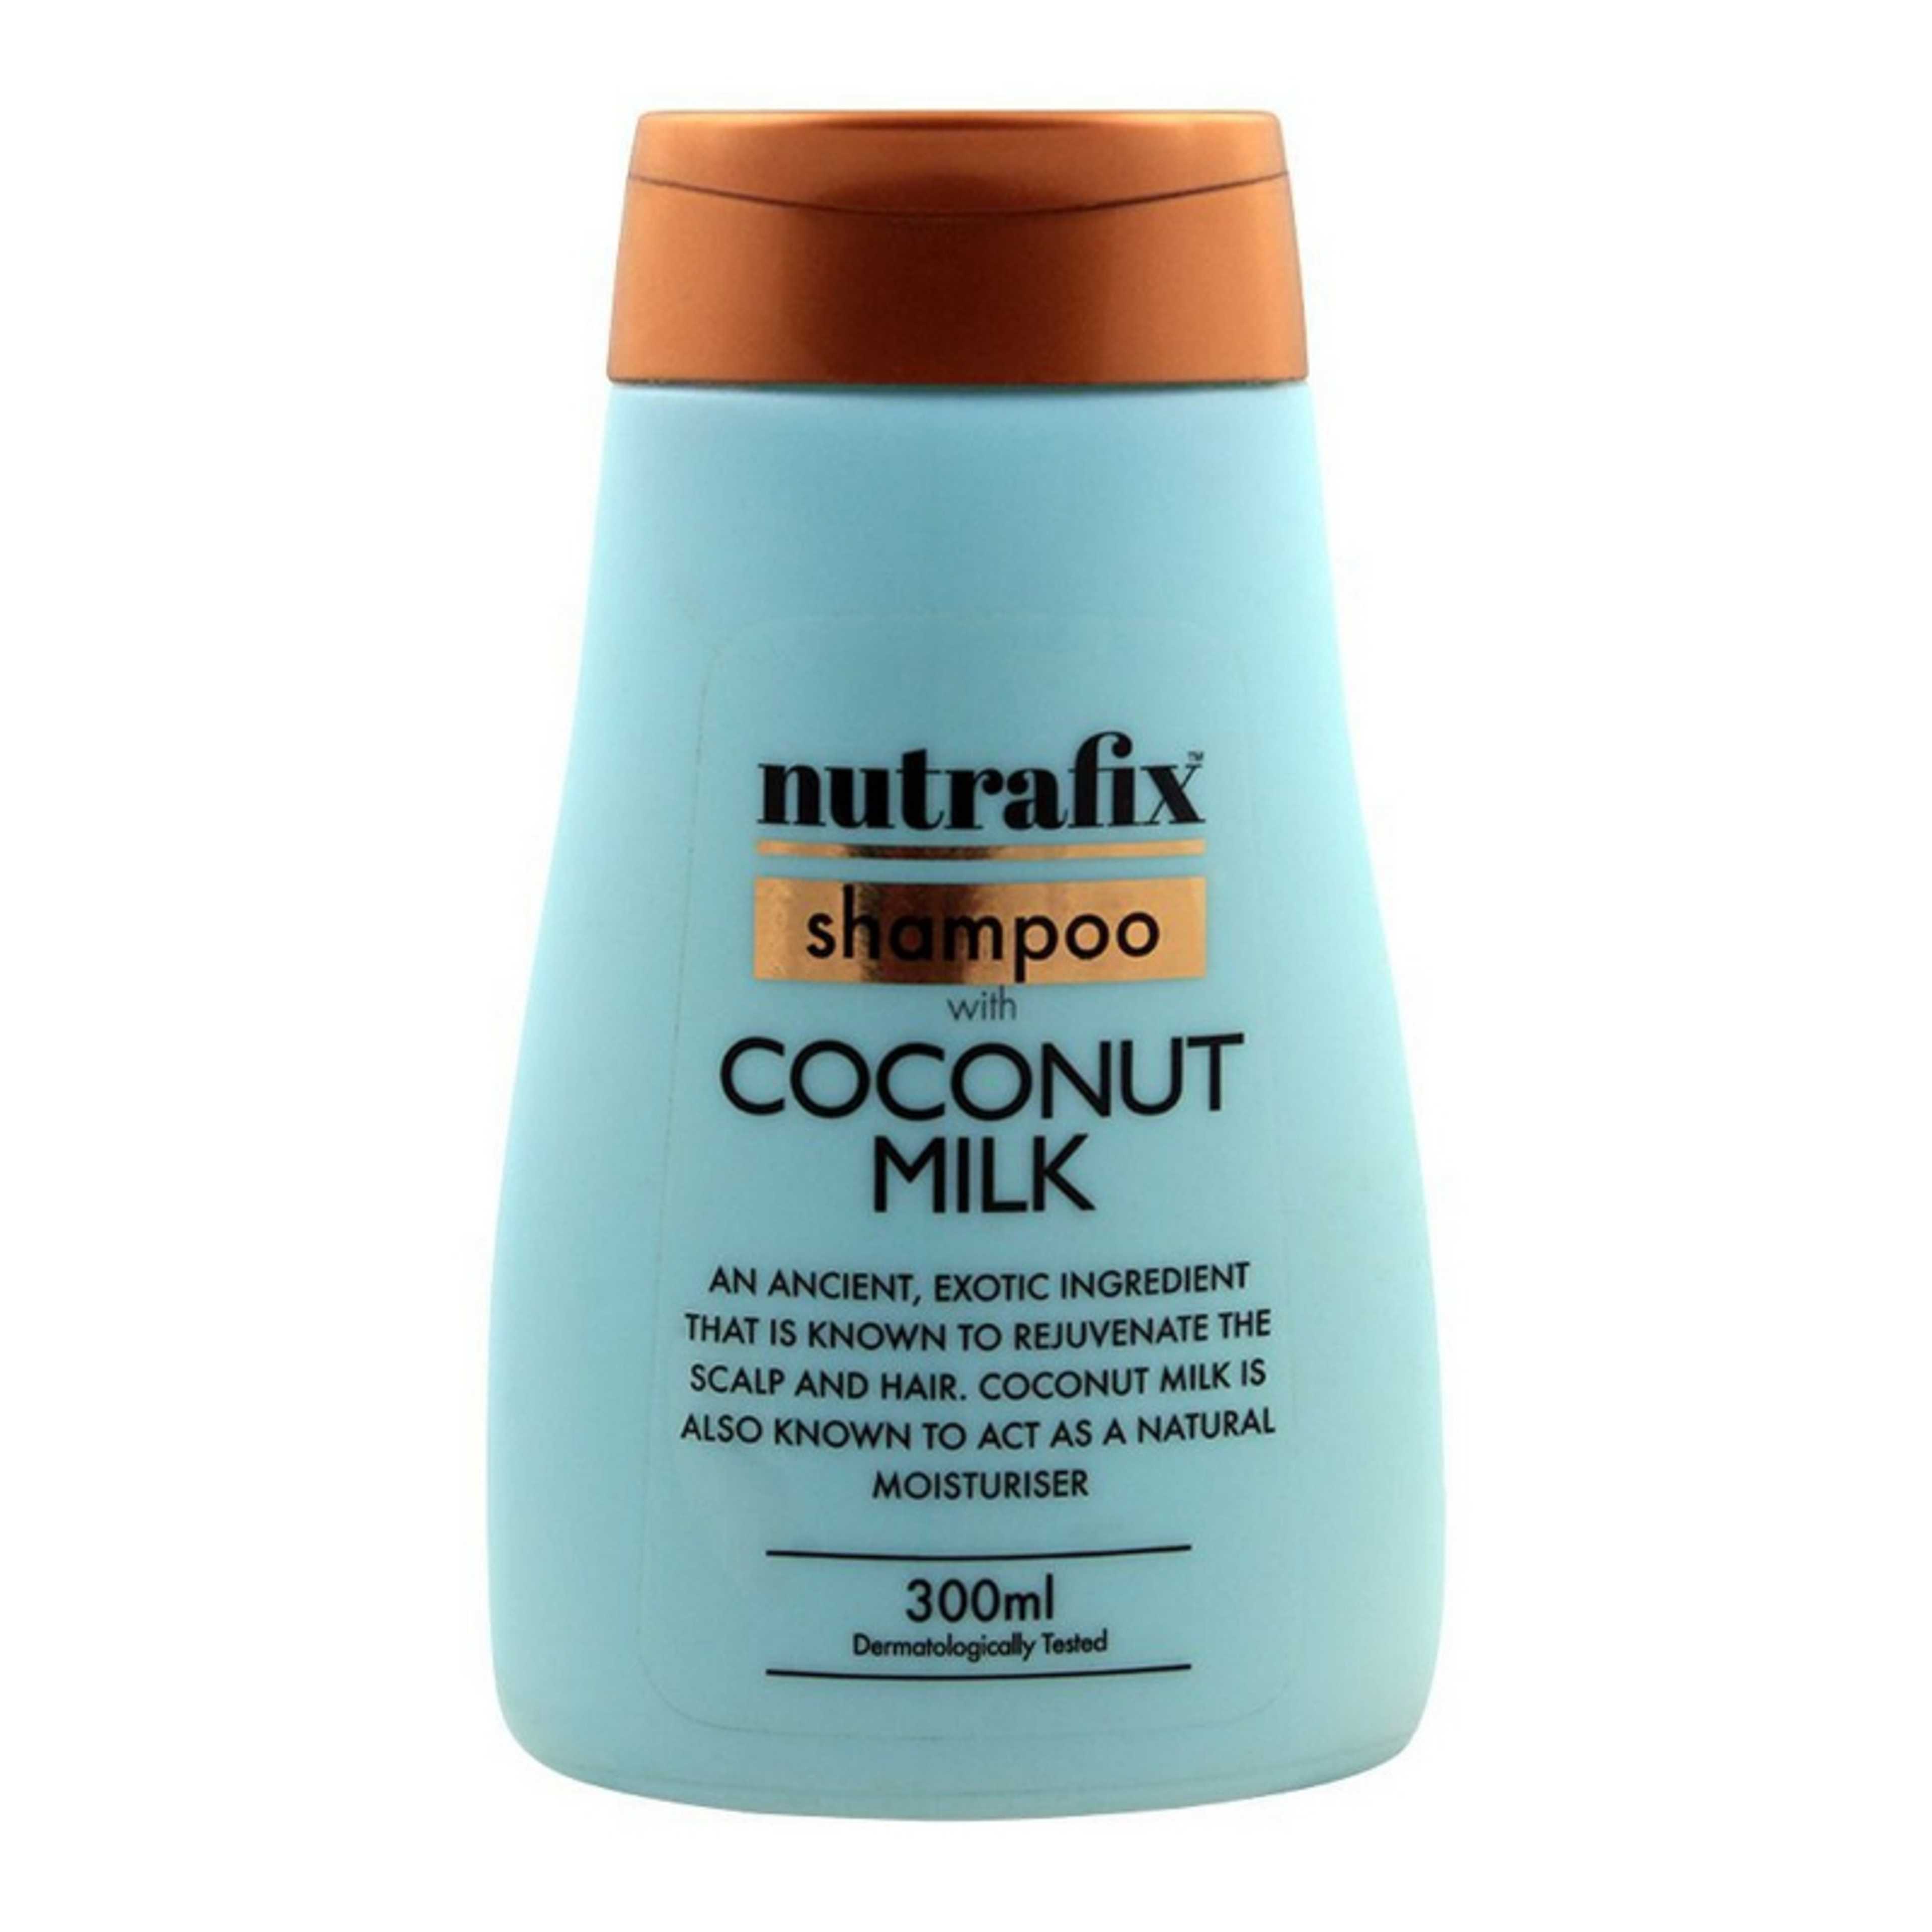 NUTRAFIX SHAMPOO WITH COCONUT MILK 300ML